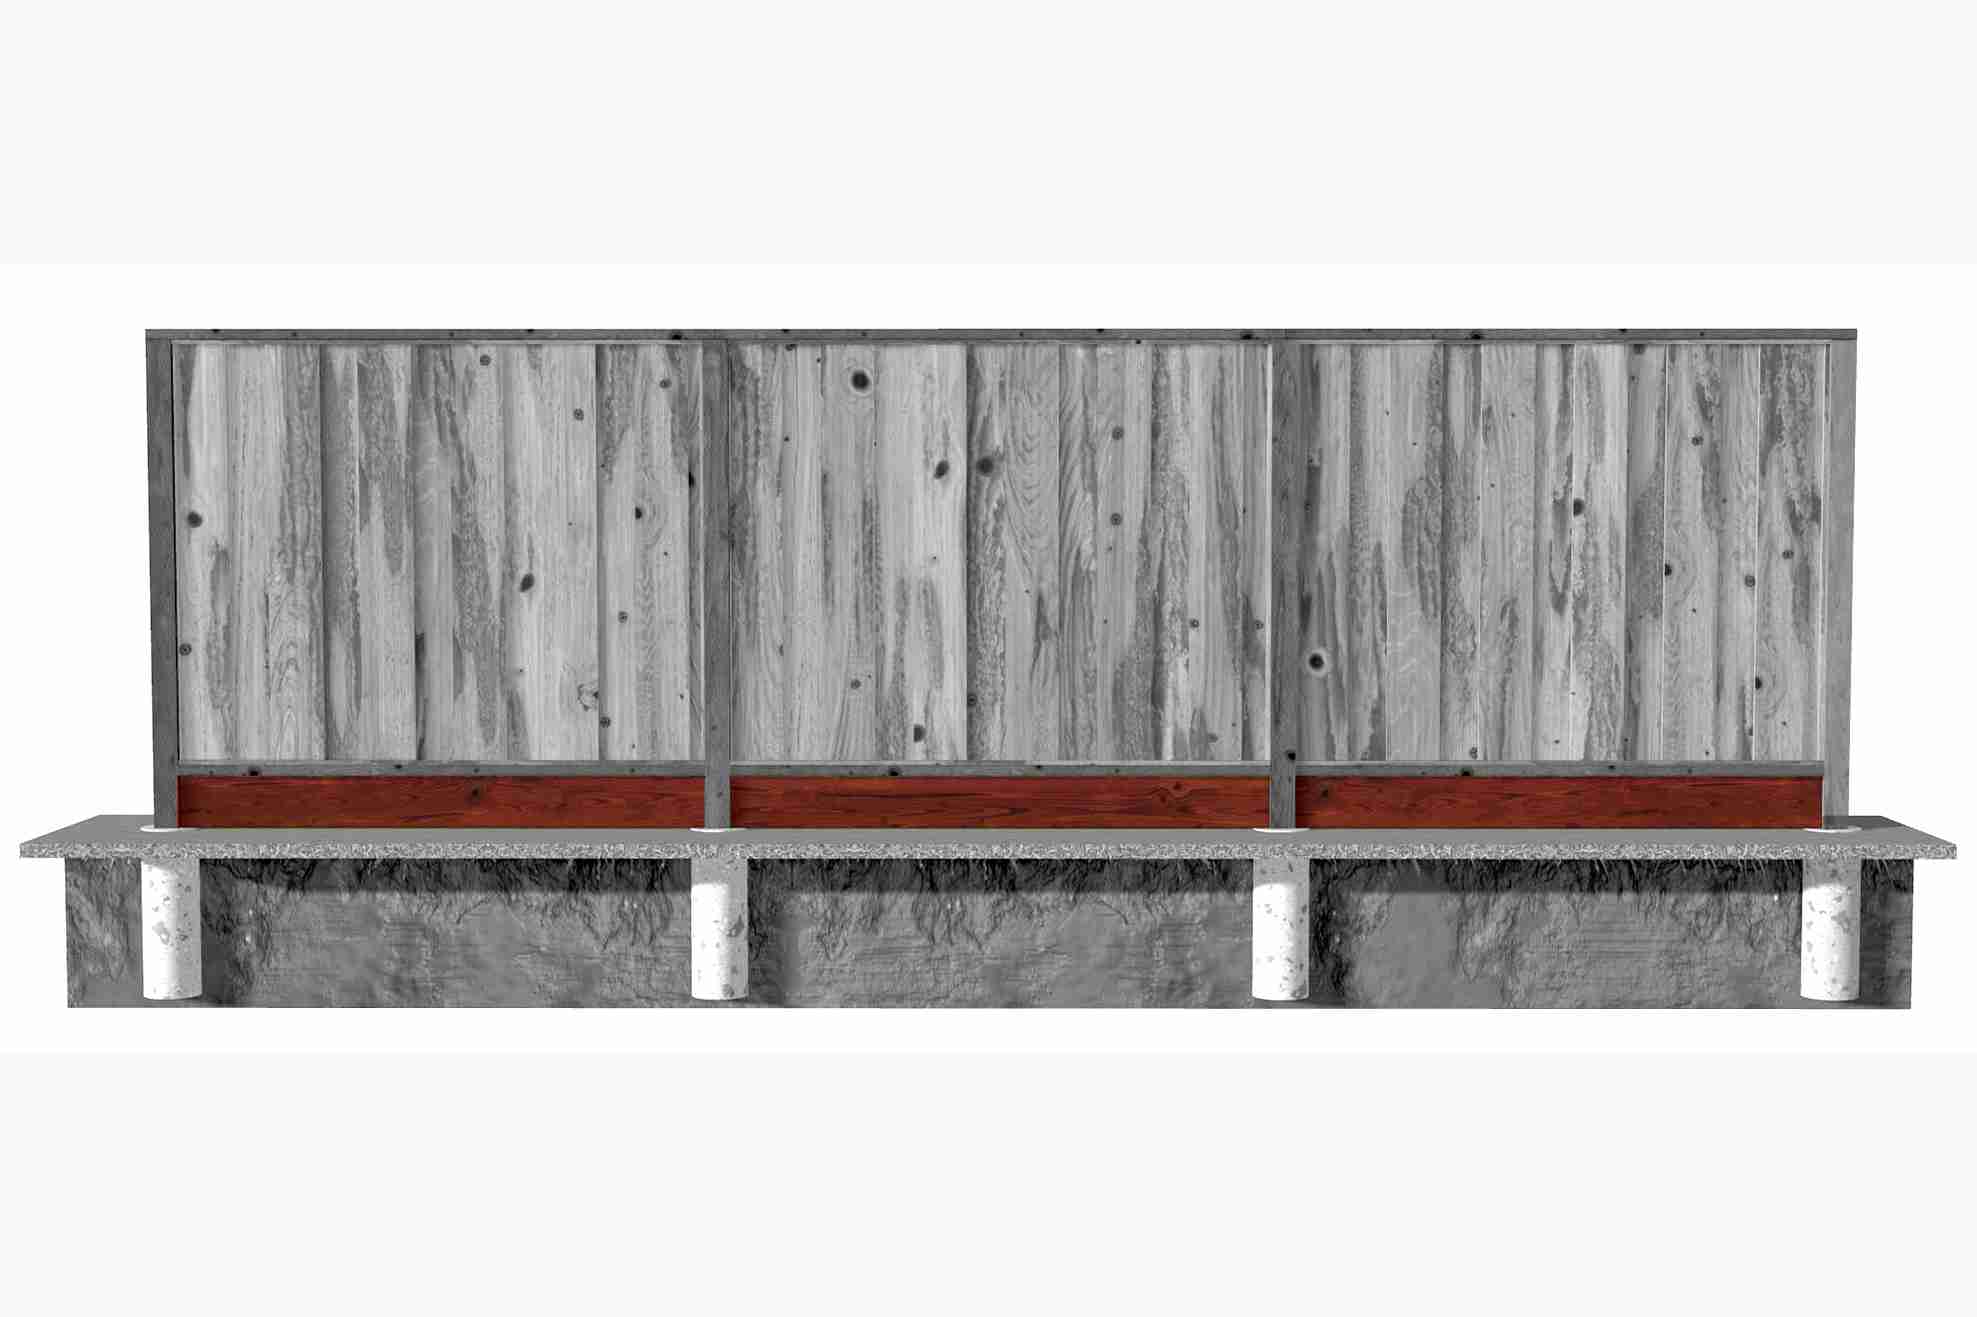 Wood fence kickboard